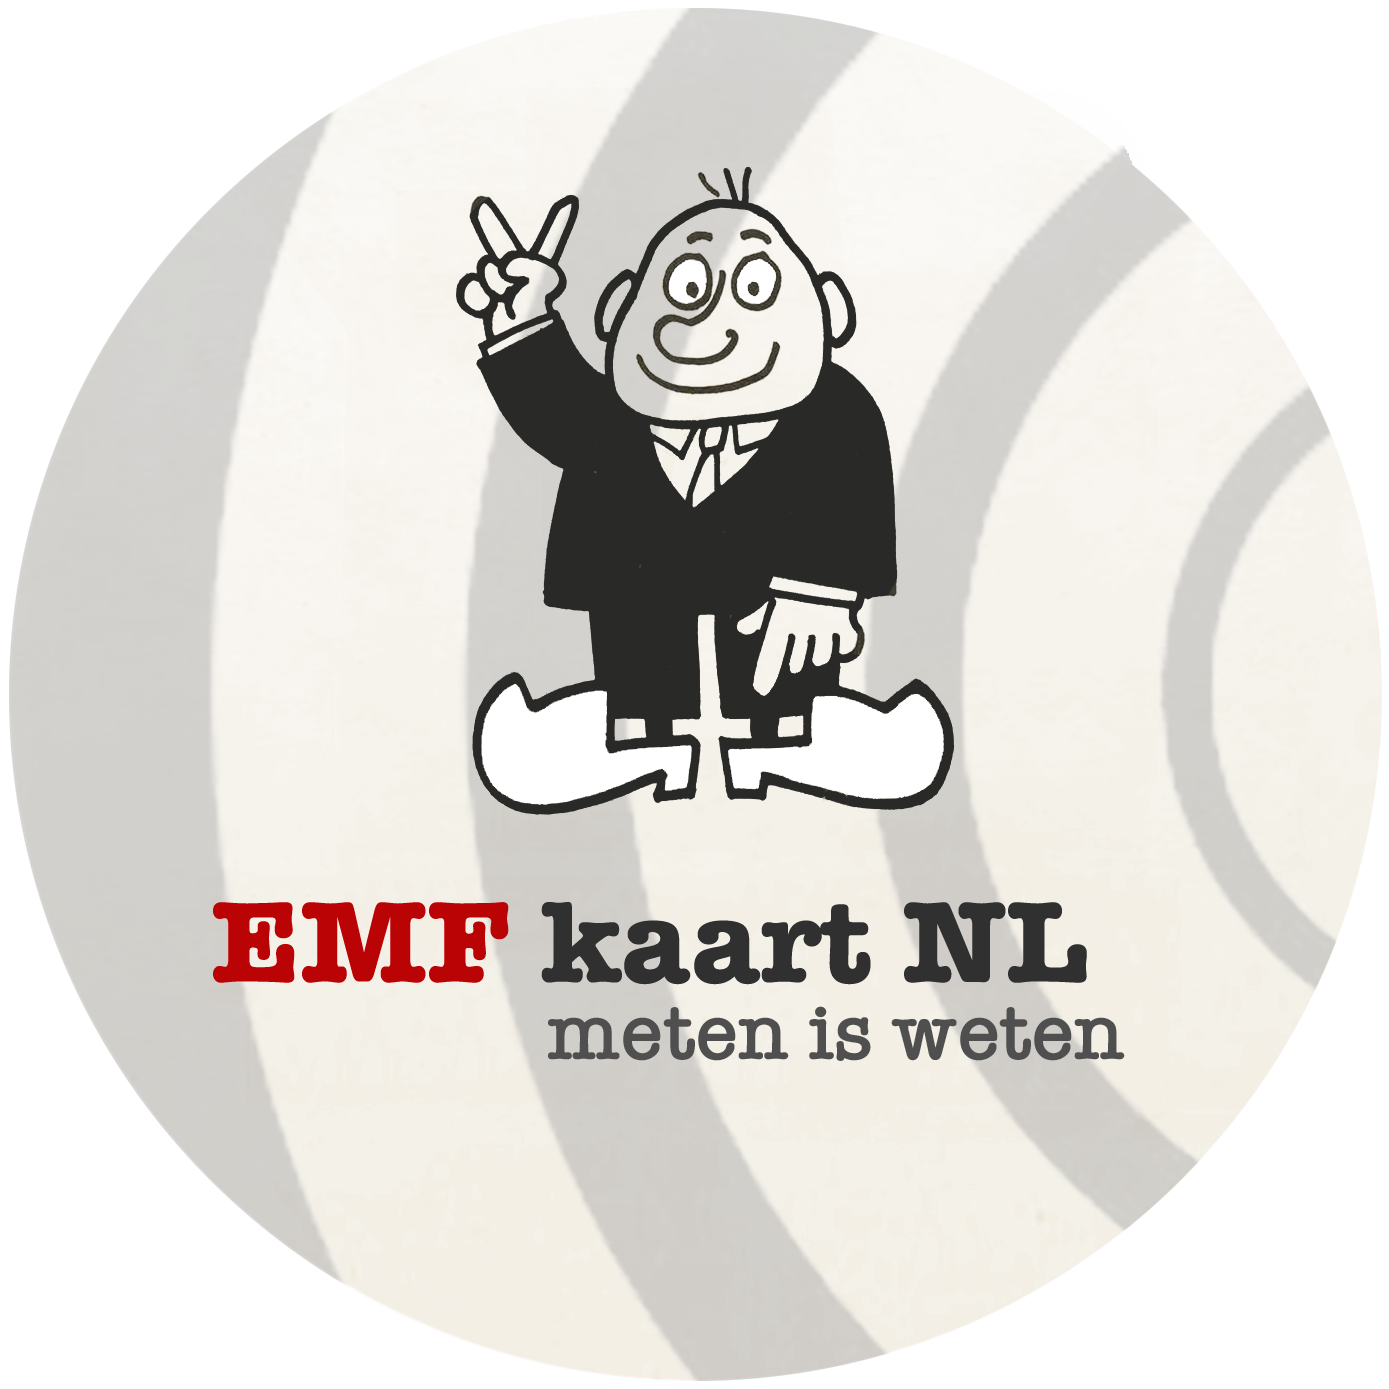 emfkaart.nl/ meten is weten